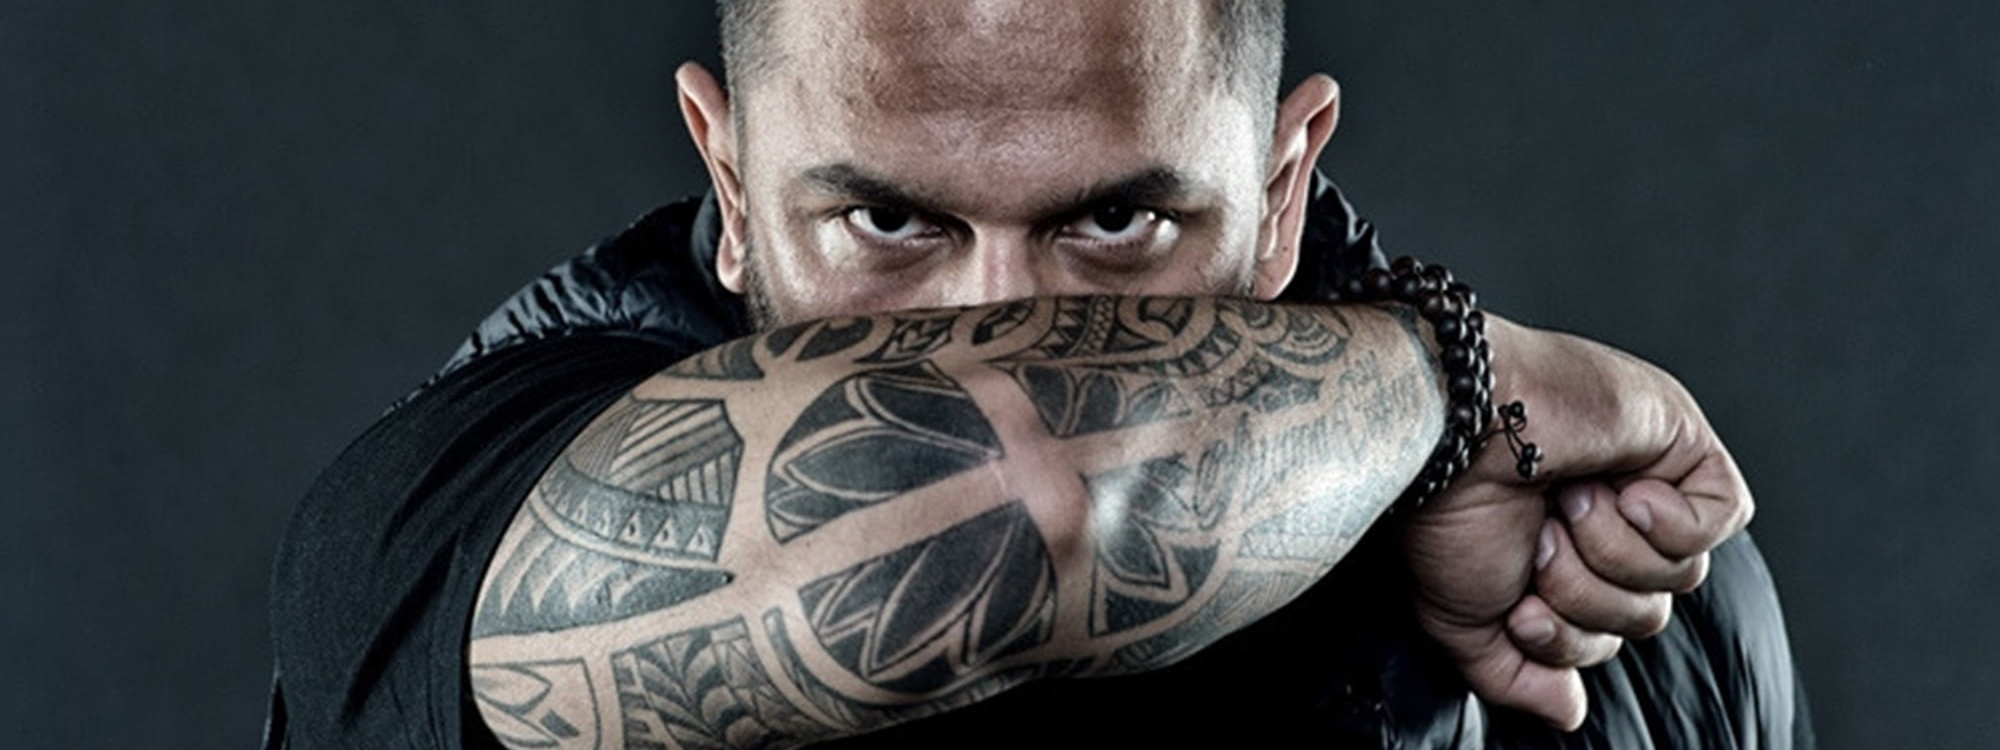 Details more than 174 badass sleeve tattoos super hot